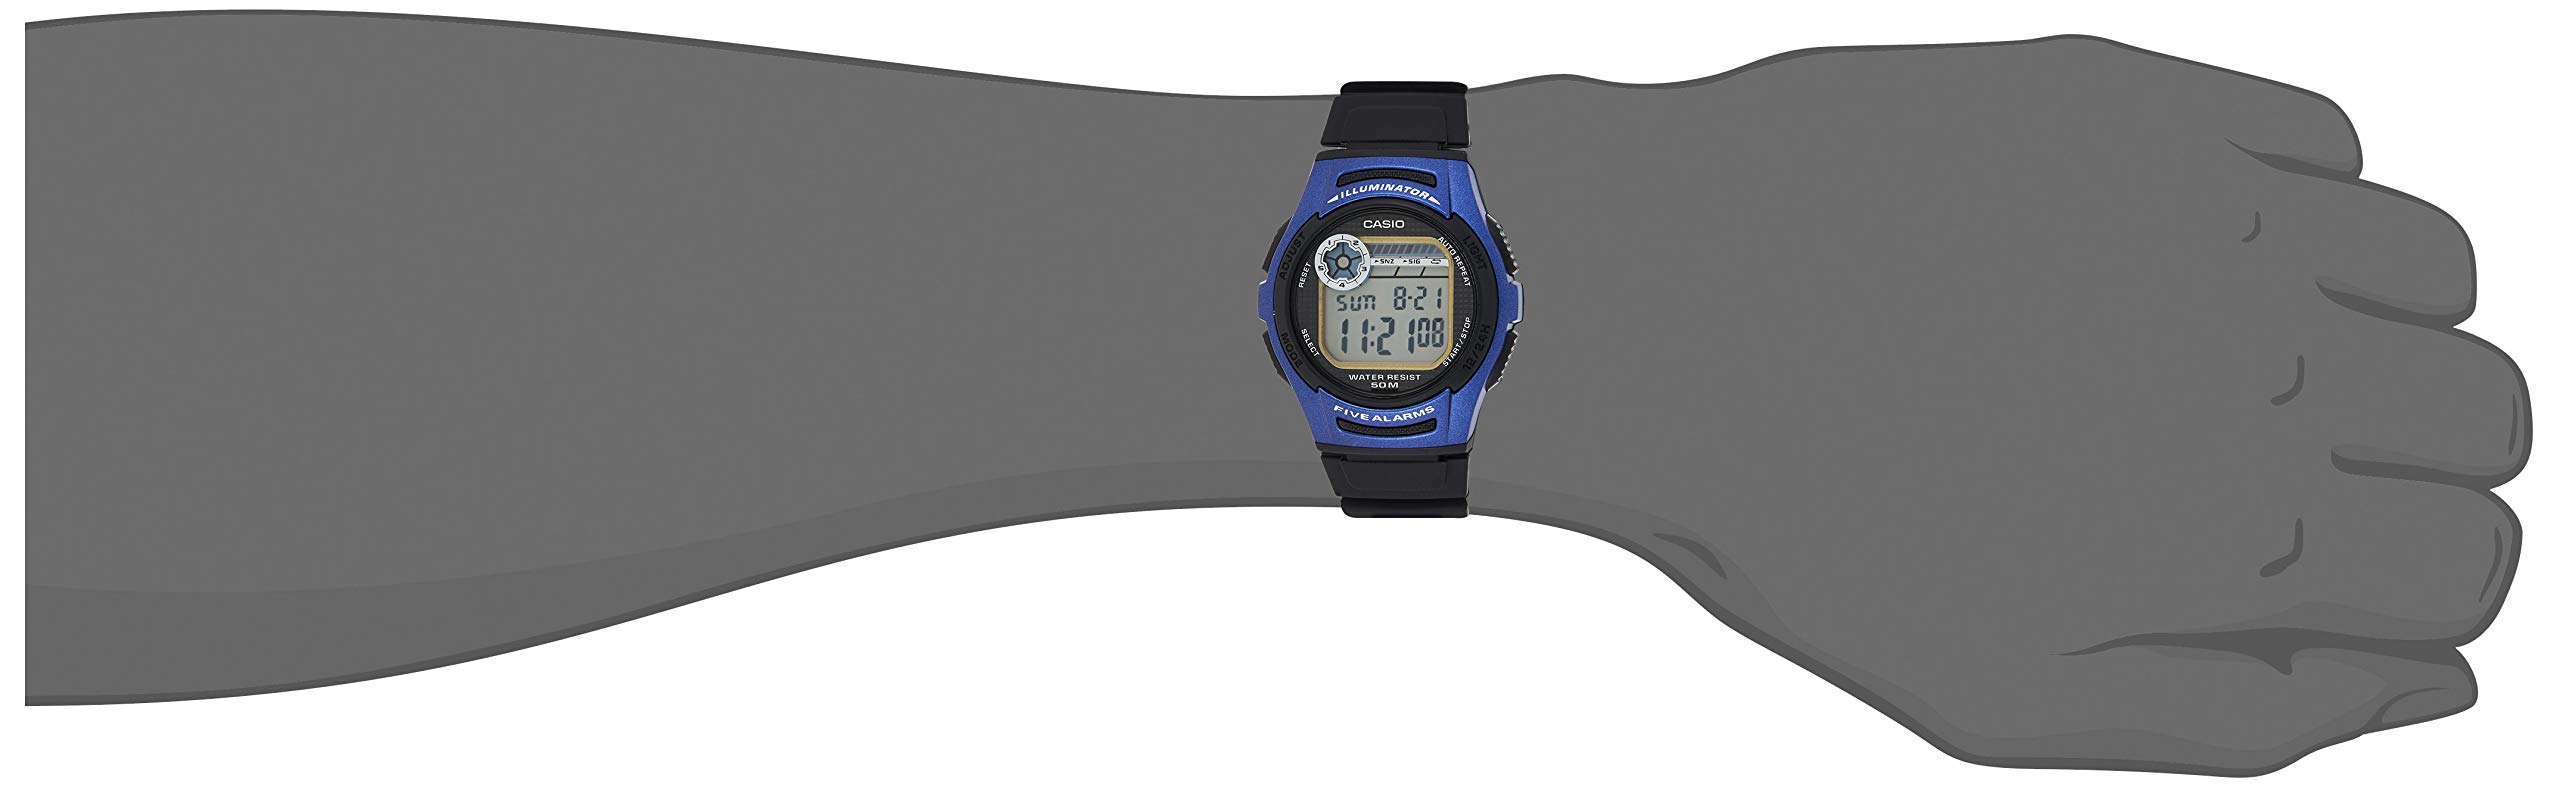 Casio Men's W213-2AVCF Water Resistant Sport Watch